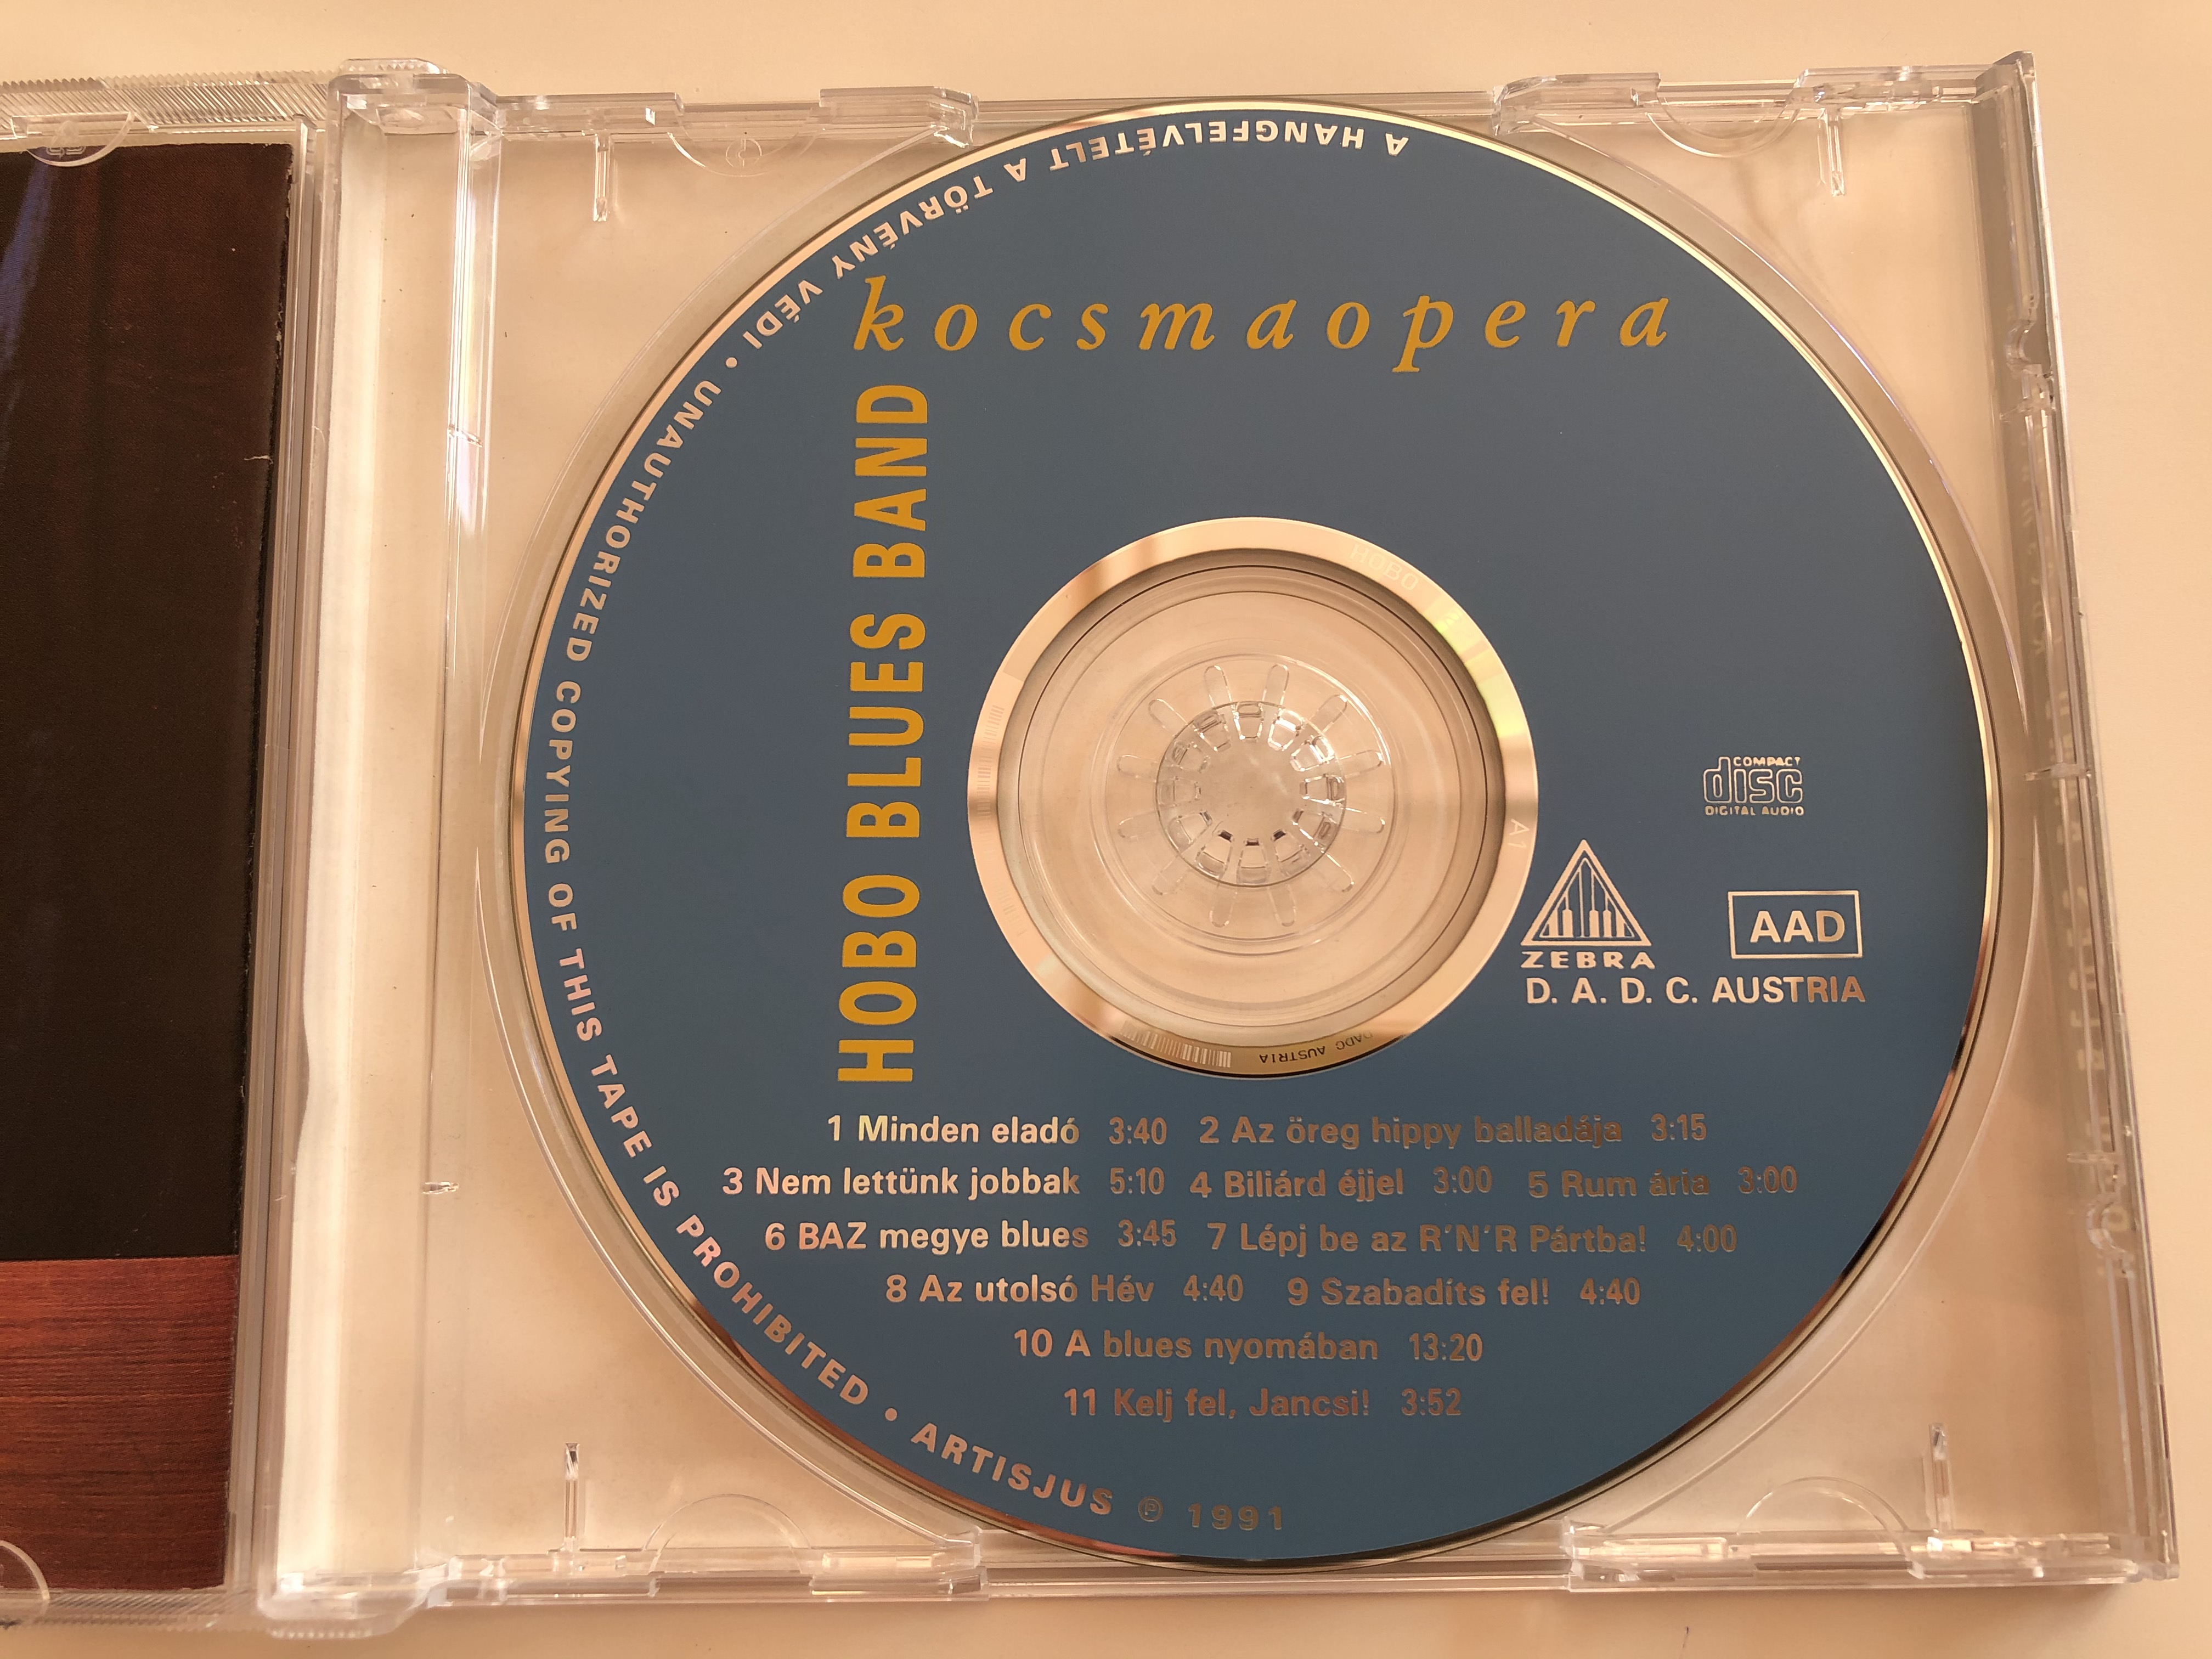 hobo-blues-band-kocsmaopera-zebra-audio-cd-1991-5-.jpg